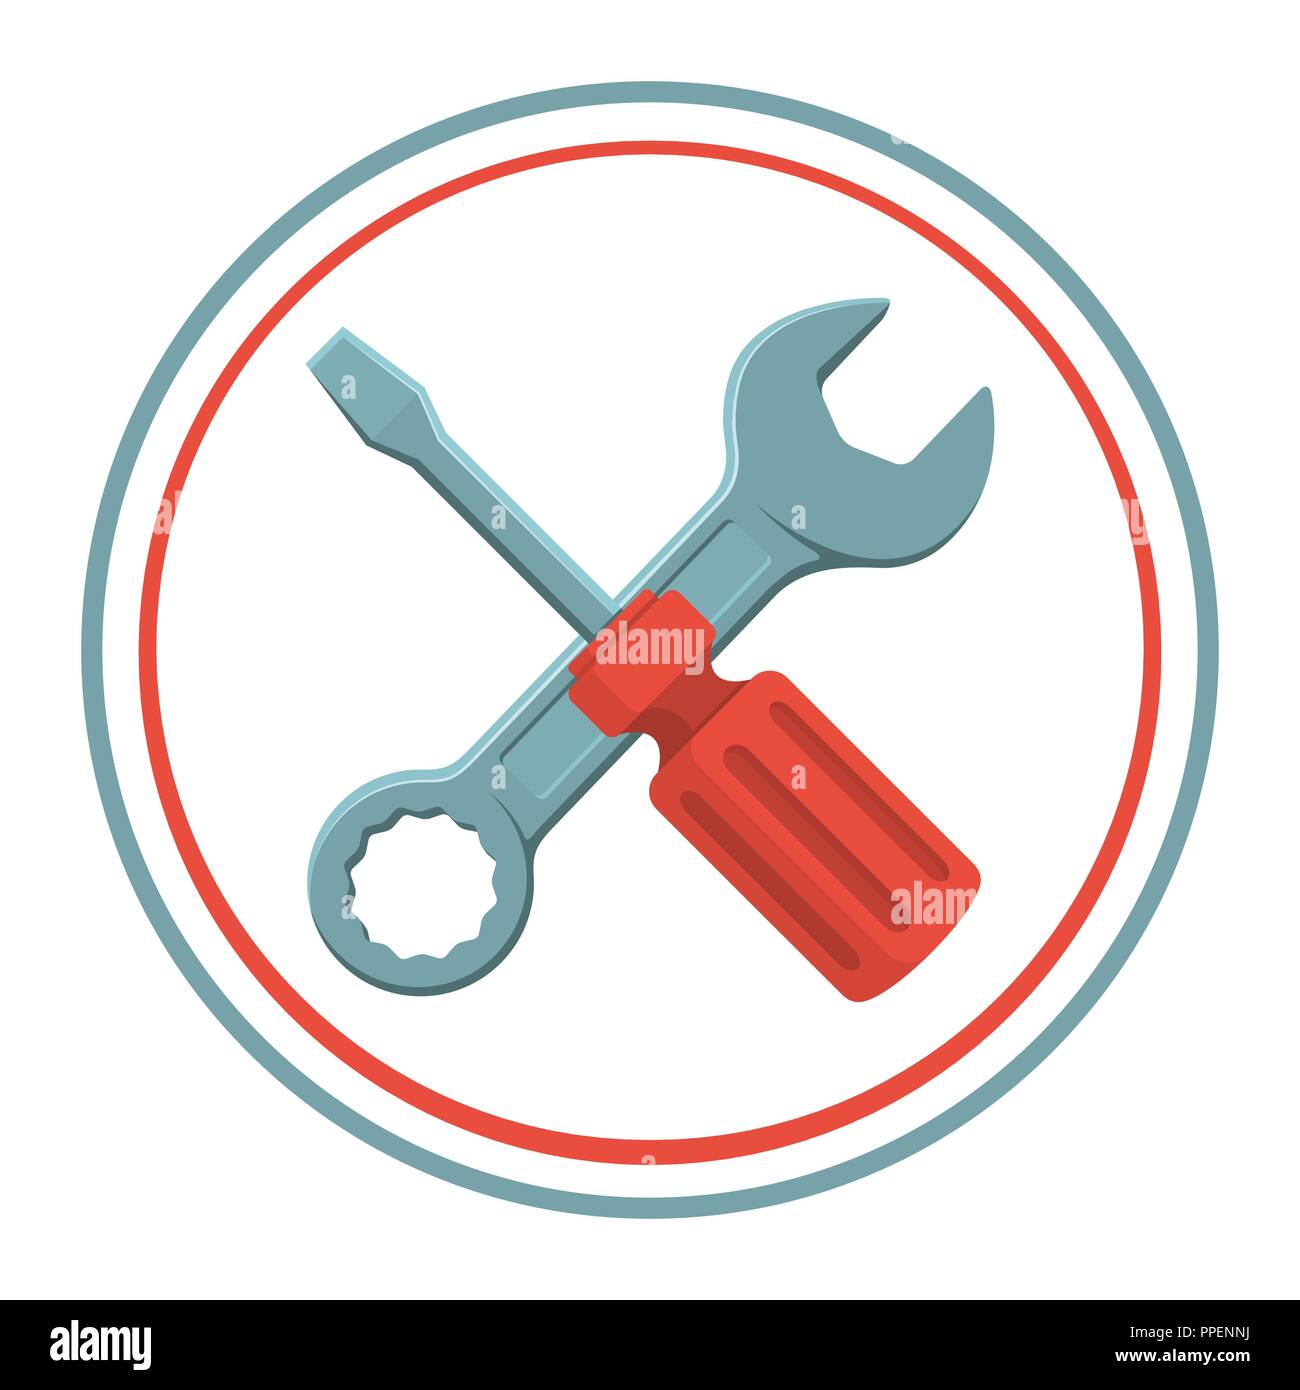 mantenimiento del hogar y trabajo de herramientas de bricolaje, equipos de  seguridad y herramientas manuales para